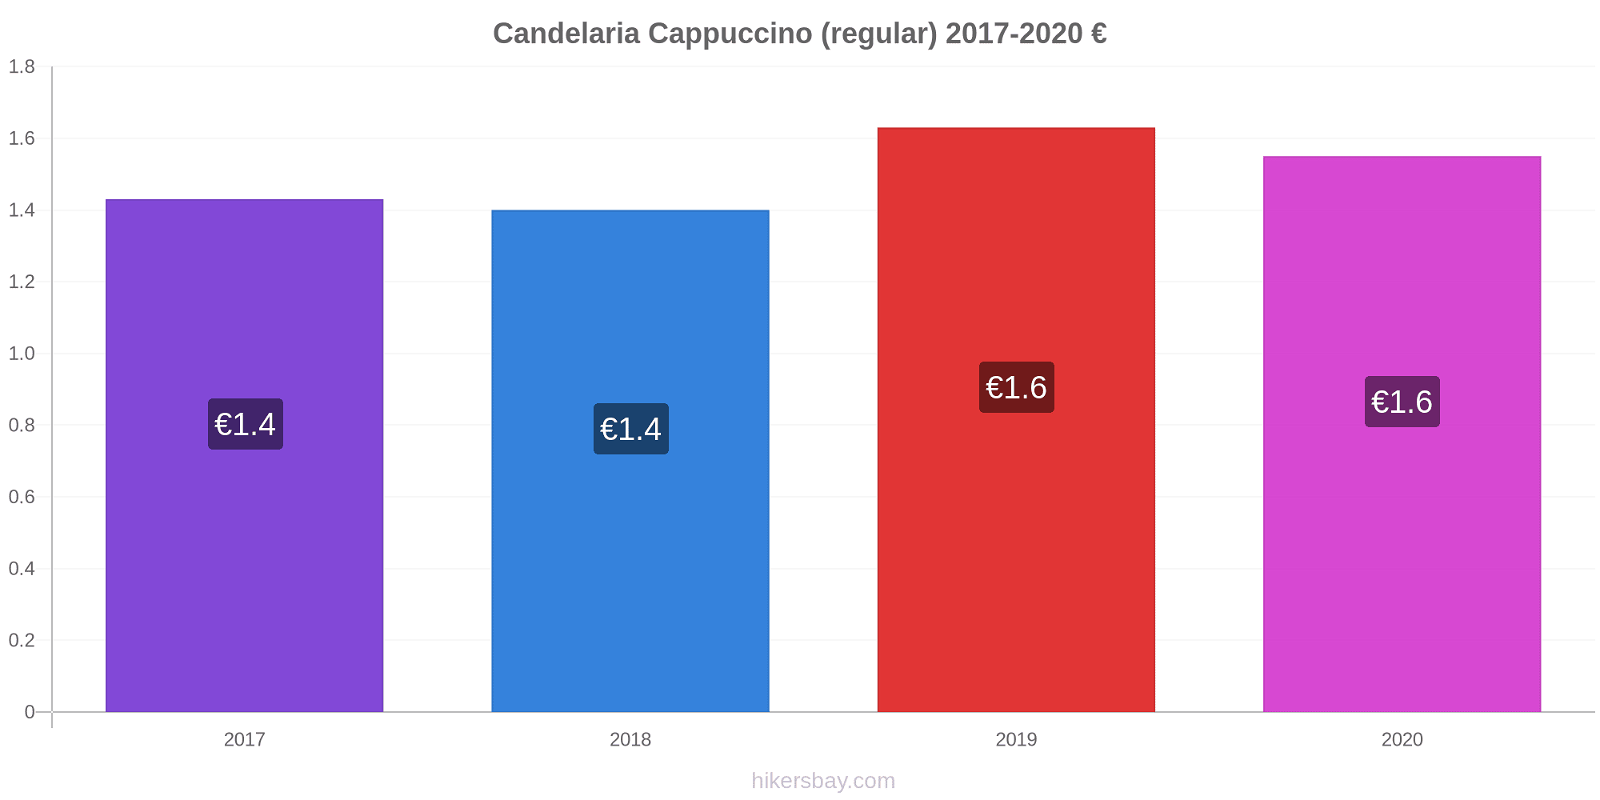 Candelaria price changes Cappuccino (regular) hikersbay.com